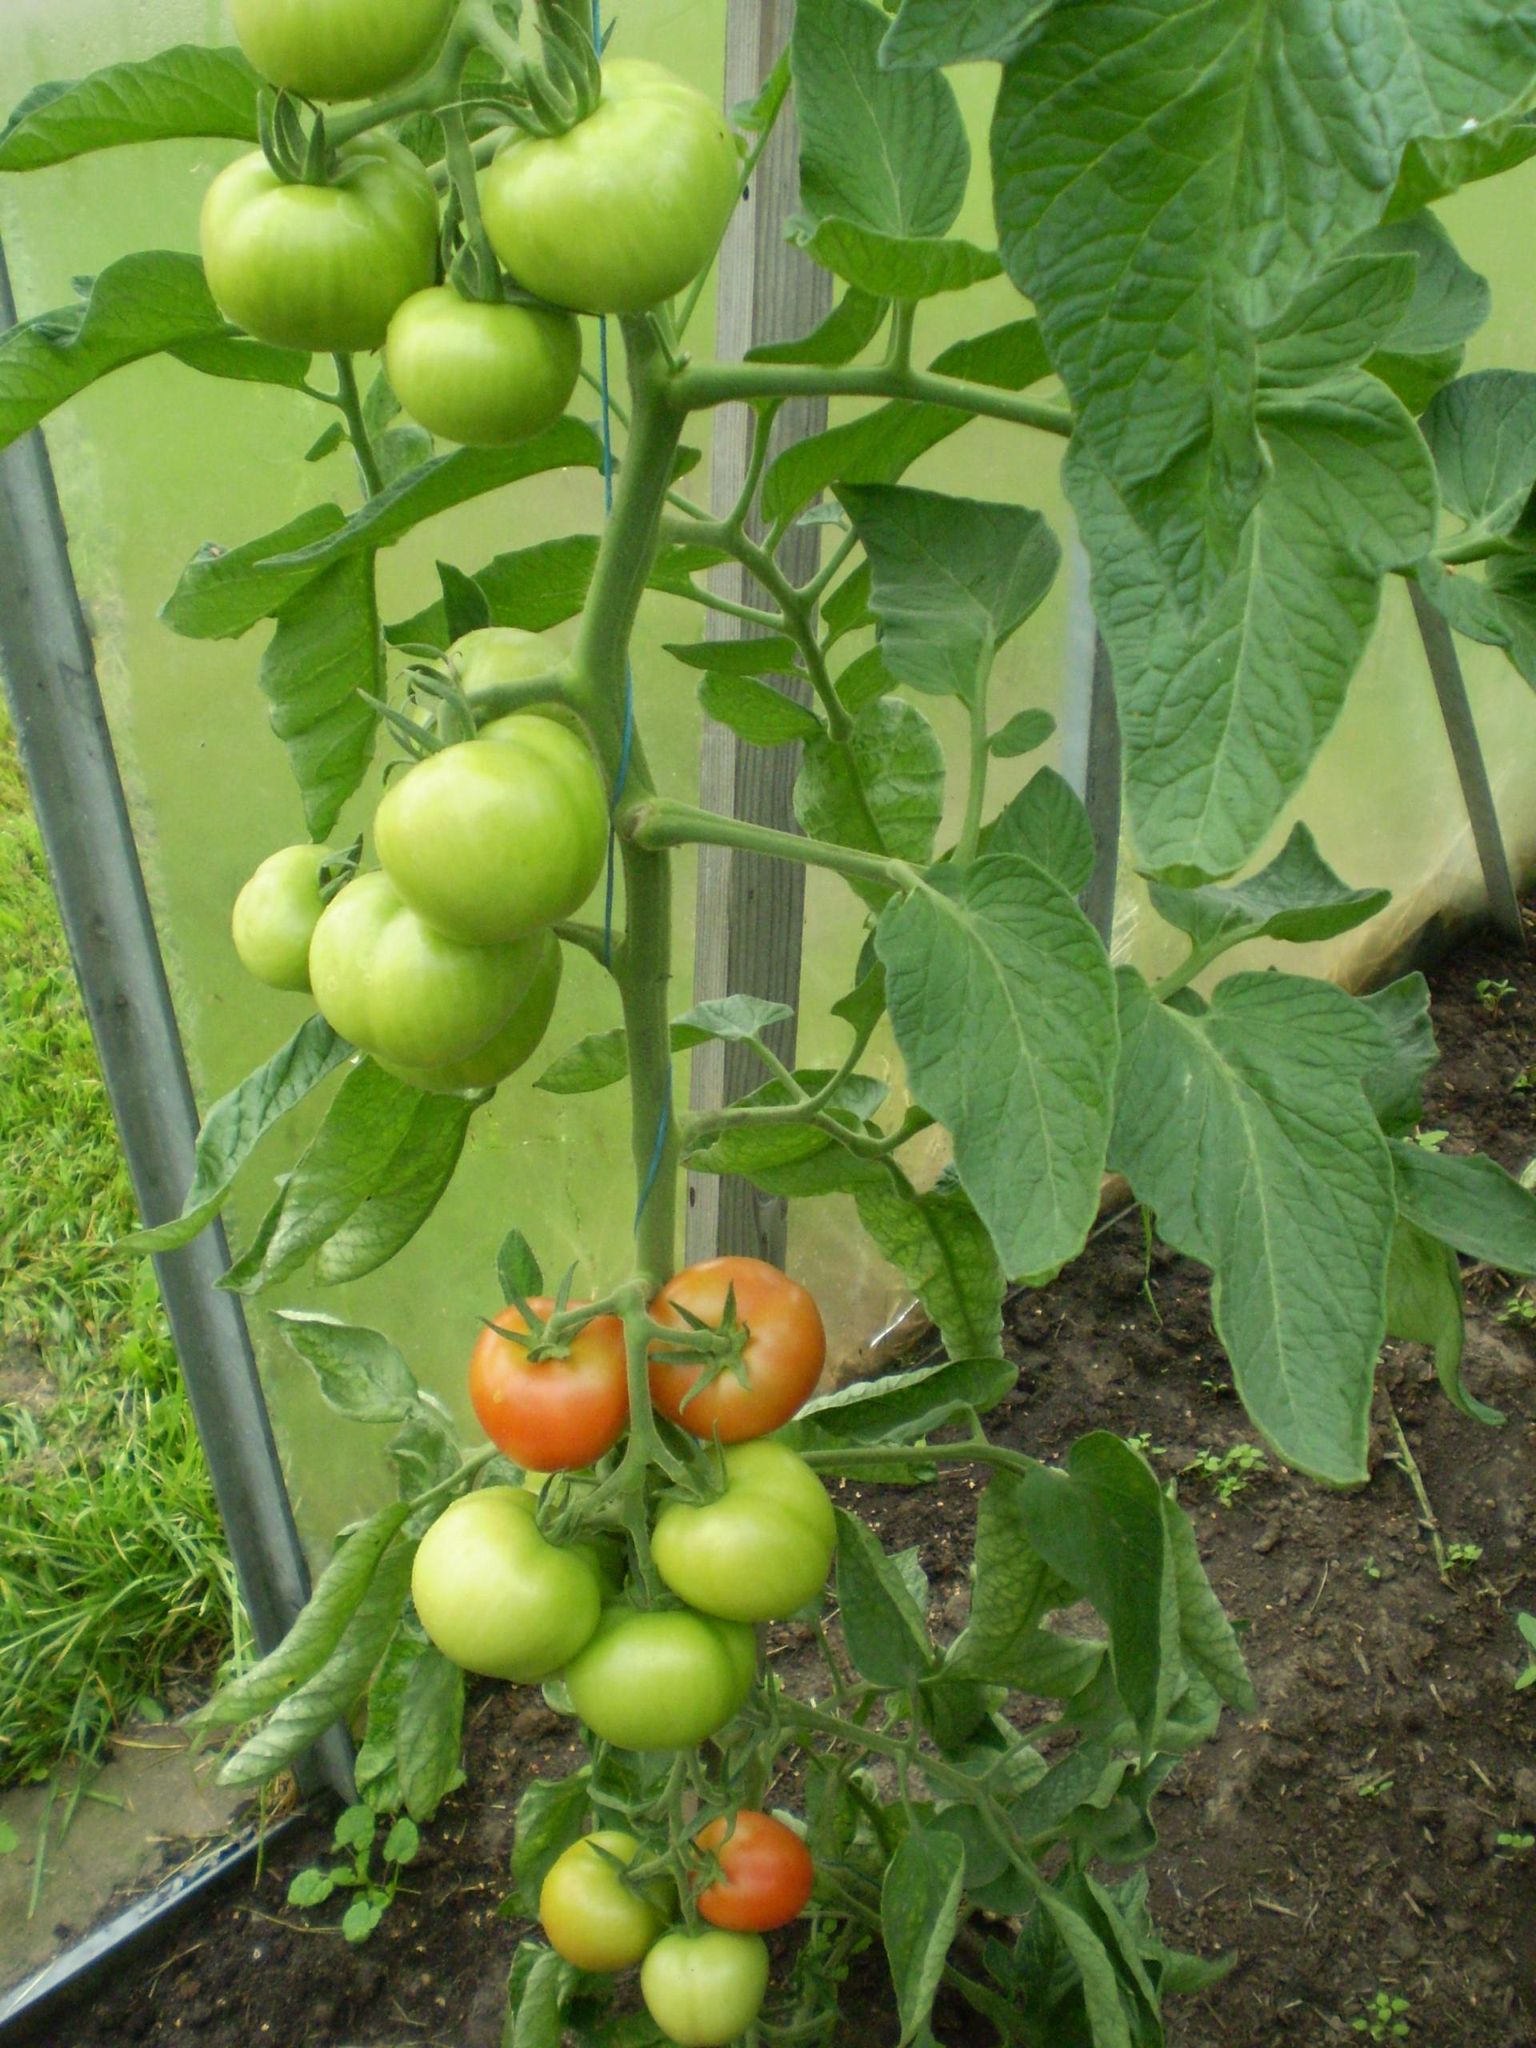 Kõrgekasvulised ehk indeterminantsed tomatitaimed on parem kujundada üheharulisena, nii on hiljem lihtsam neid hooldada.